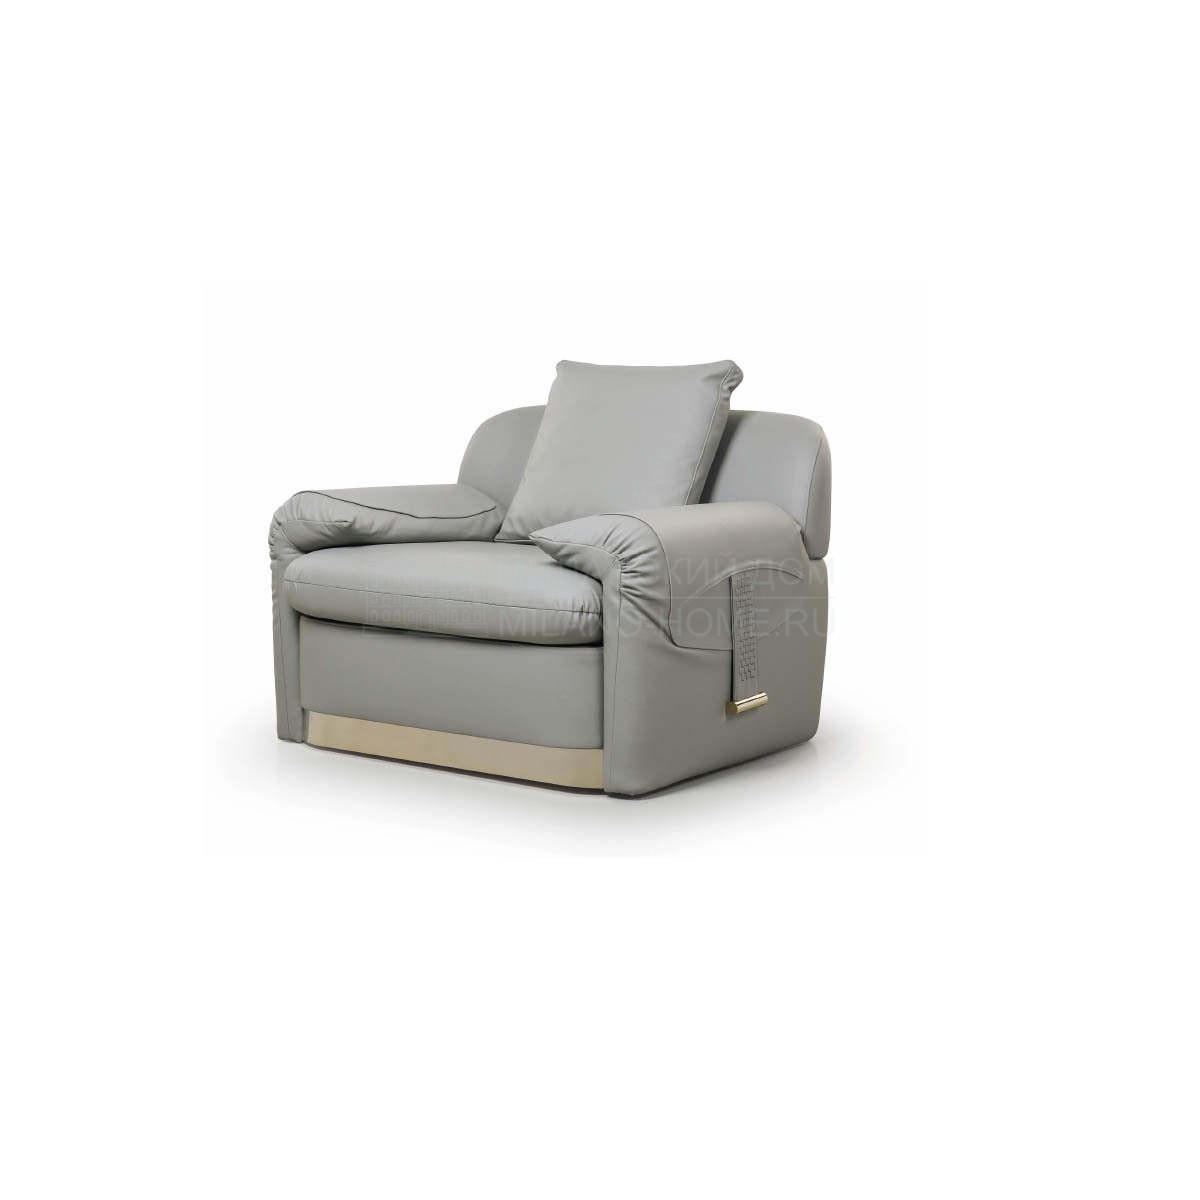 Кожаное кресло Eclipse armchair из Италии фабрики TURRI